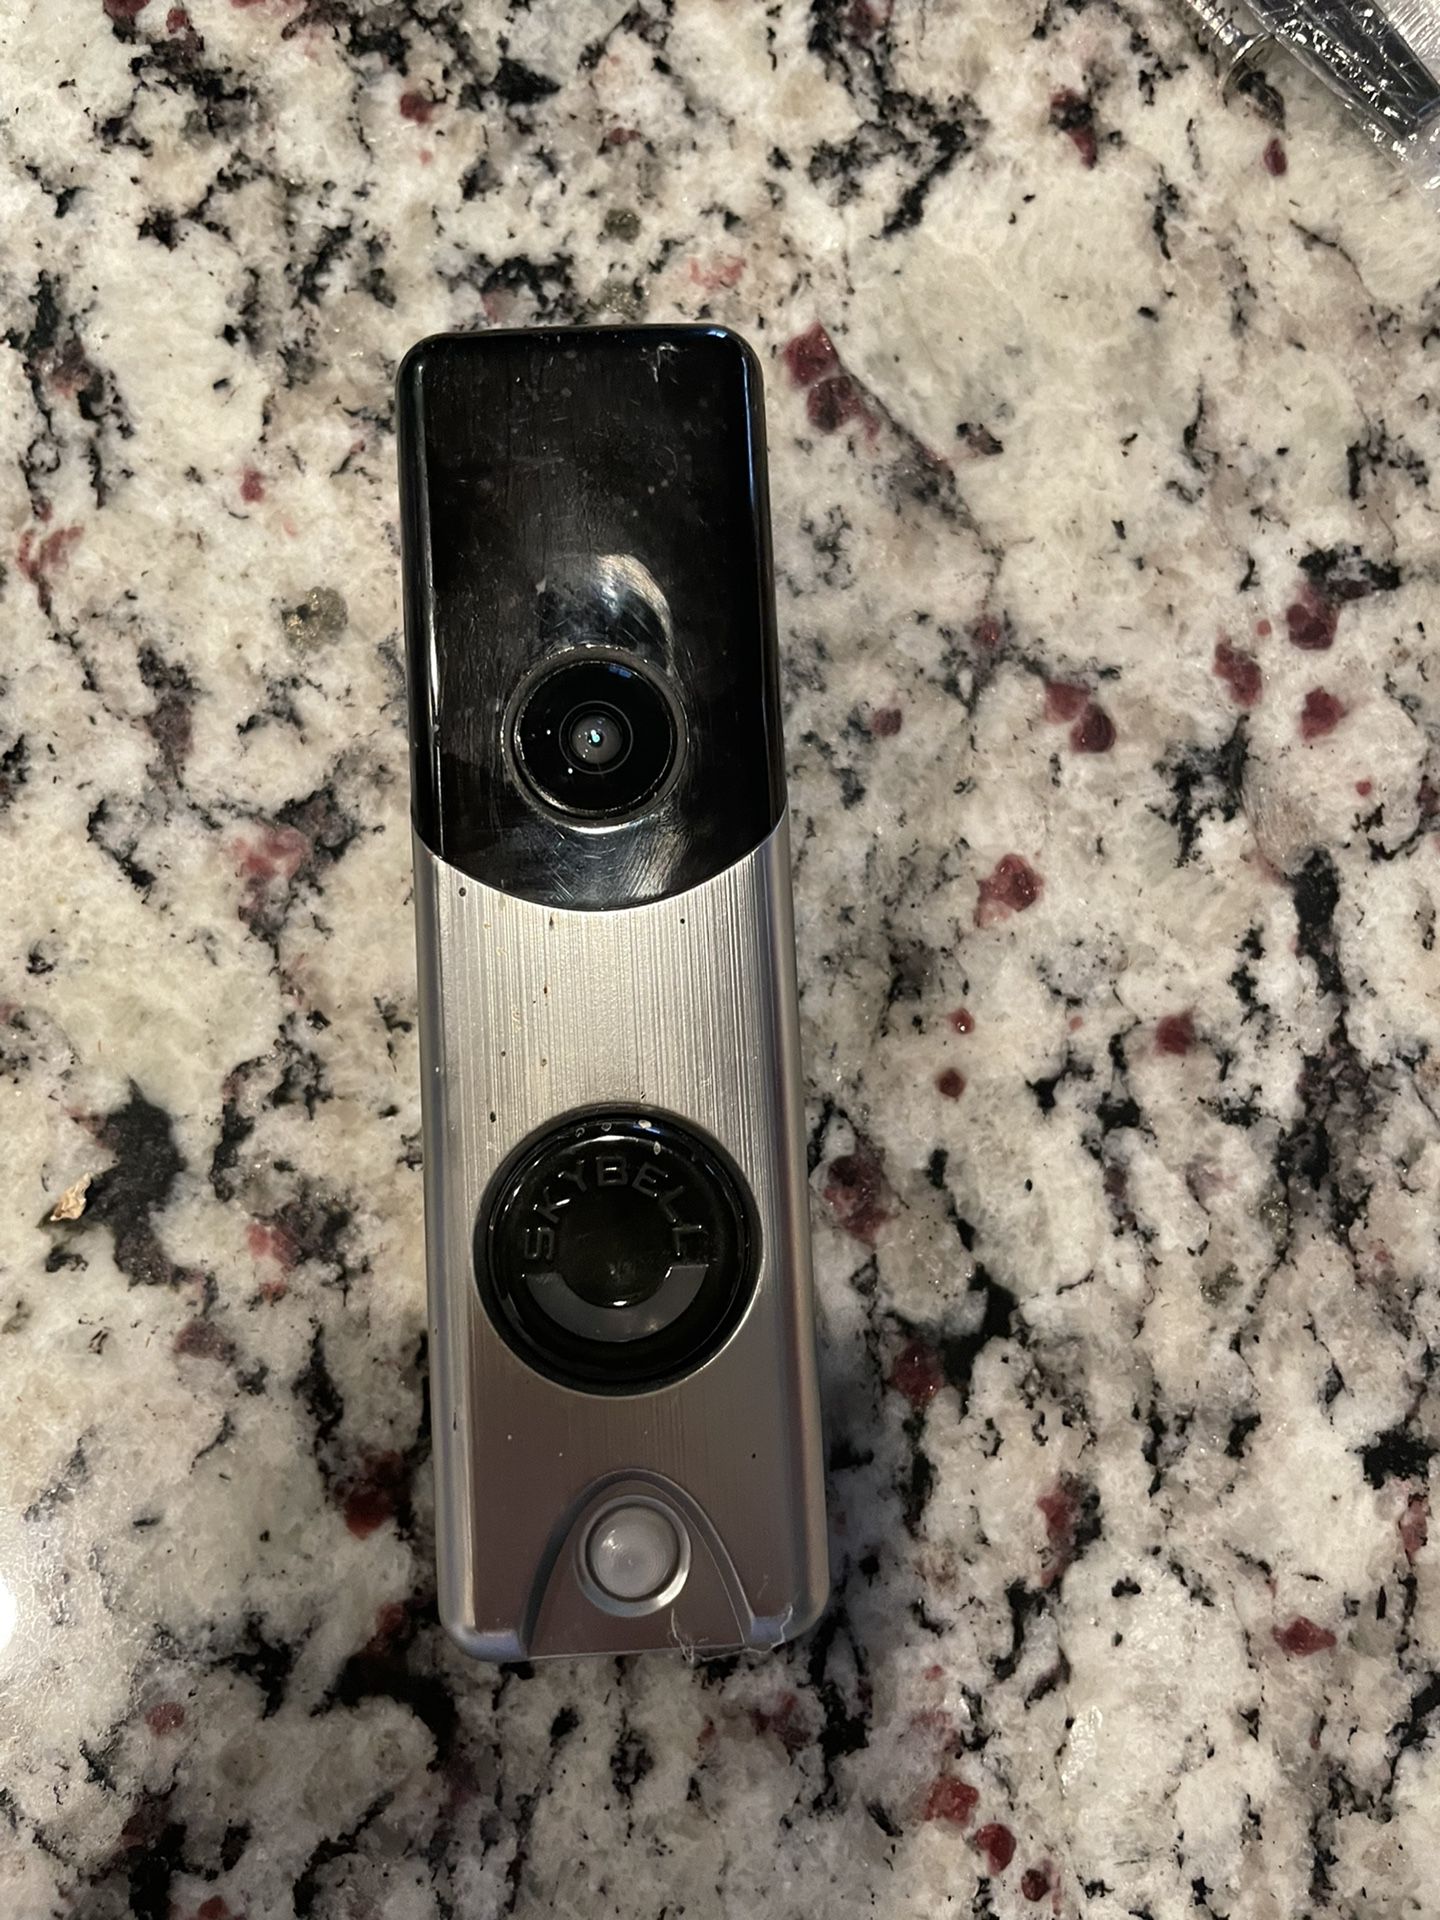 SkyBell Doorbell Camera